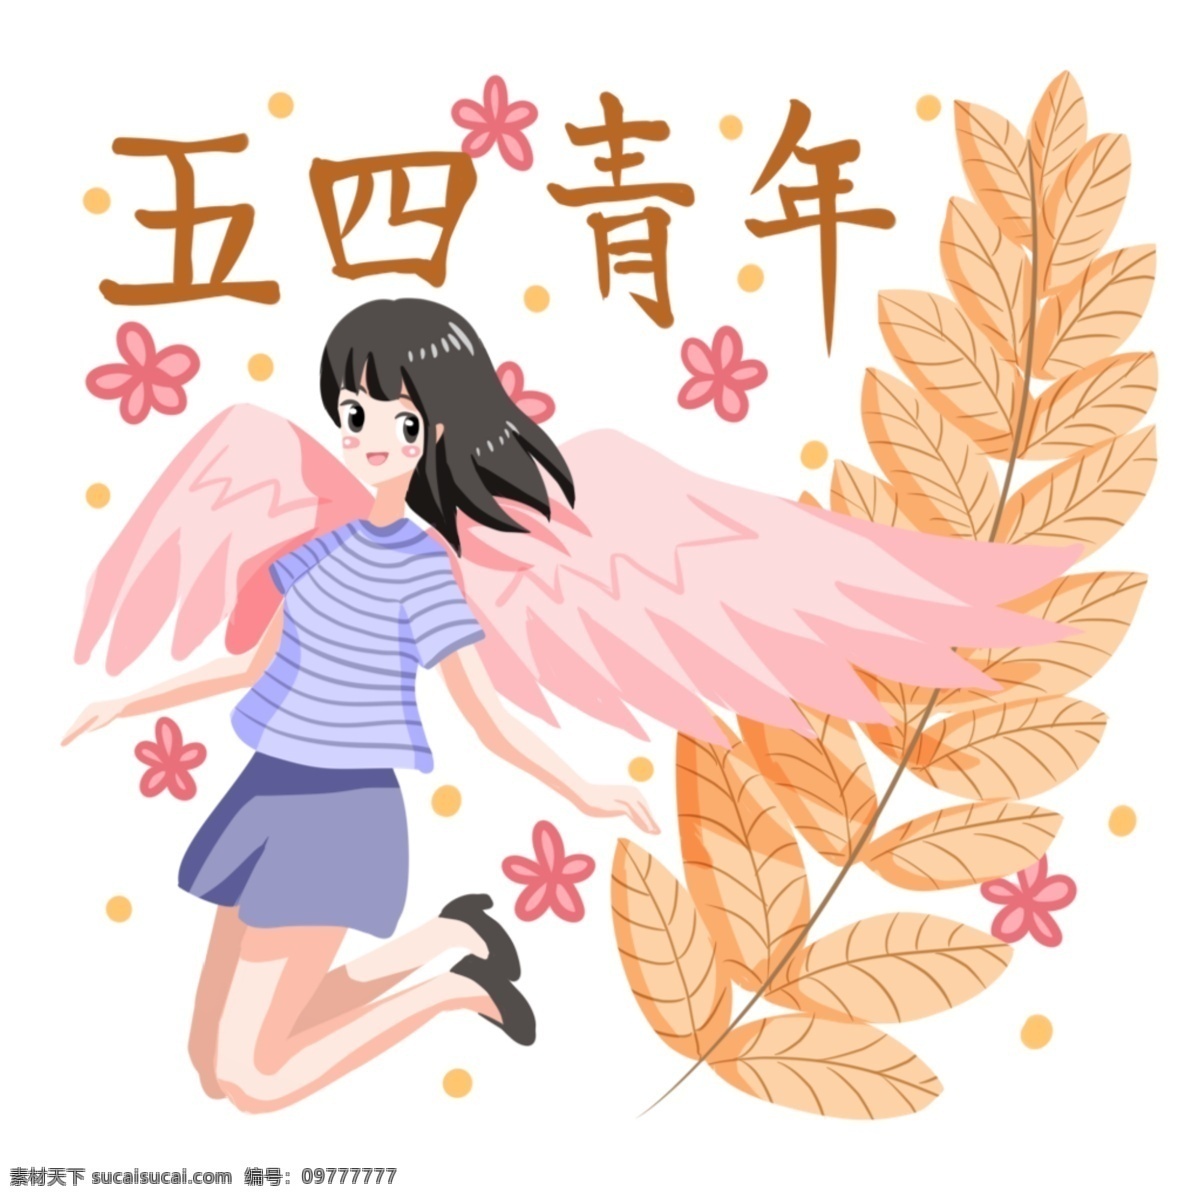 青年节 飞舞 小女孩 人物 插画 飞舞的小女孩 粉色的翅膀 黄色的叶子 漂亮的小女孩 卡通人物